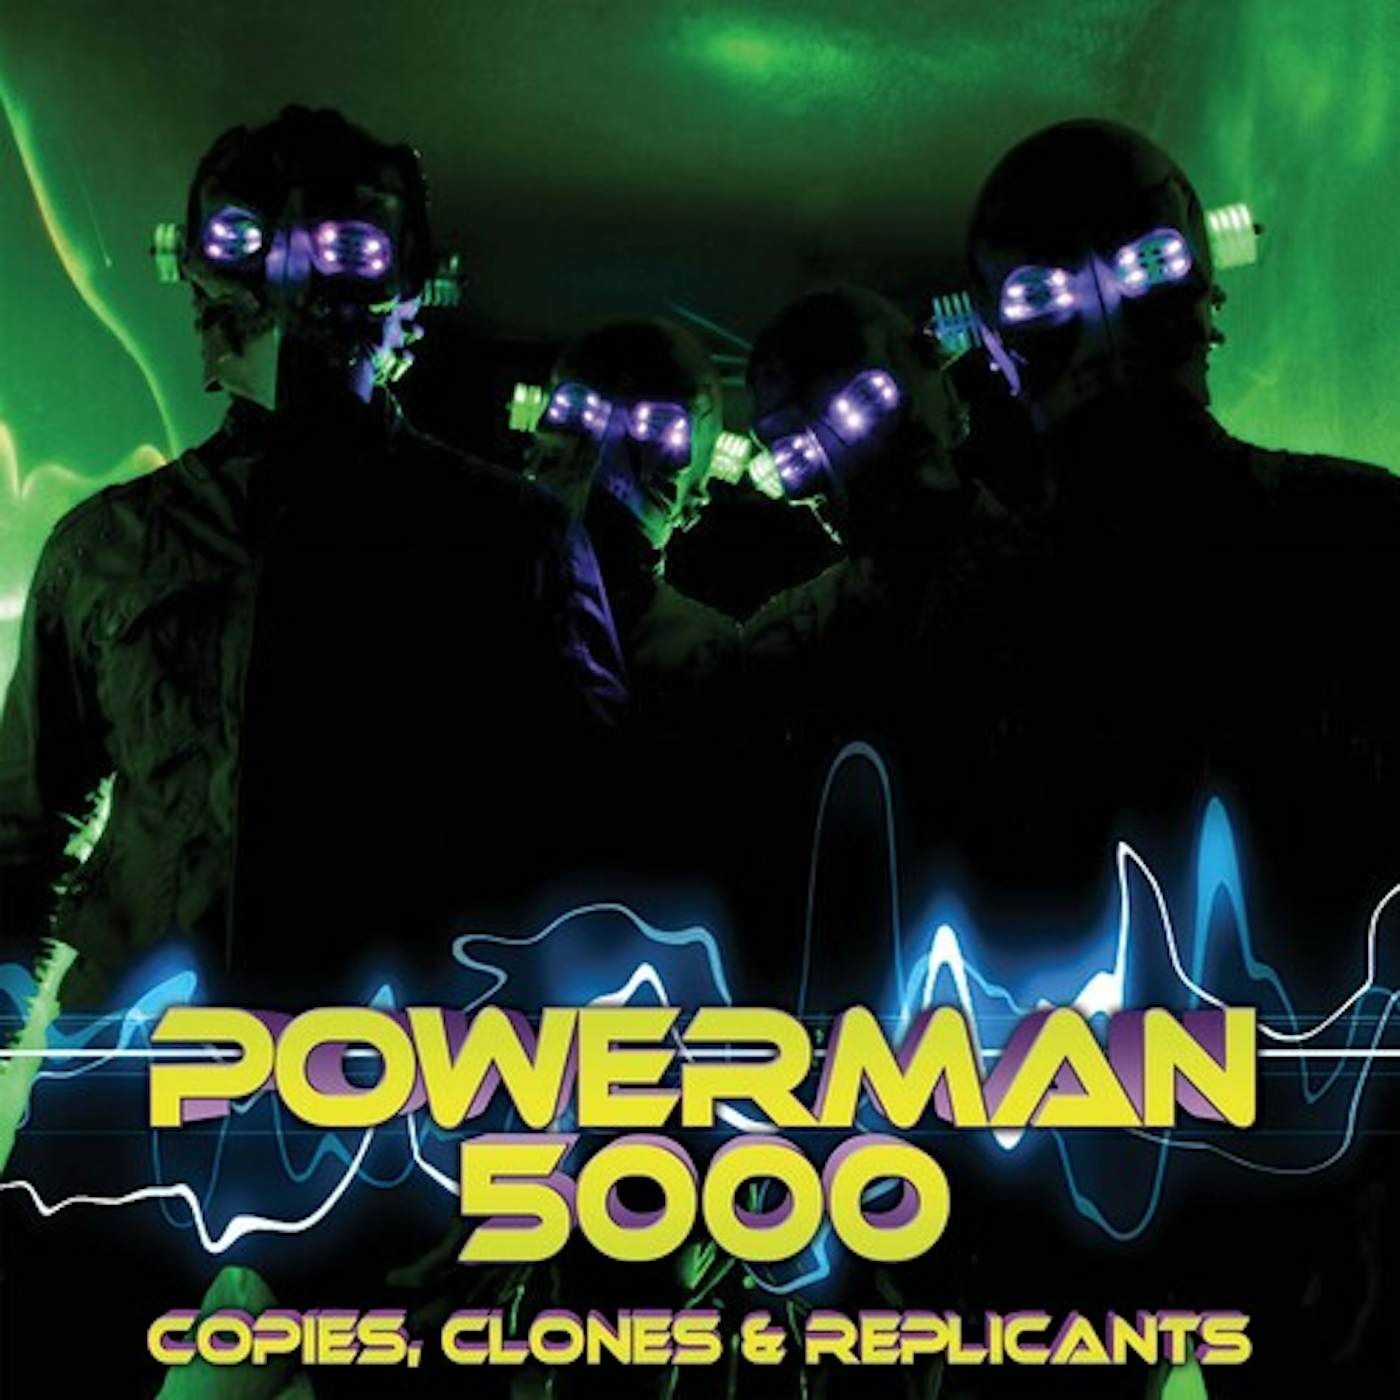 Powerman 5000 Copies Clones & Replicants Vinyl Record